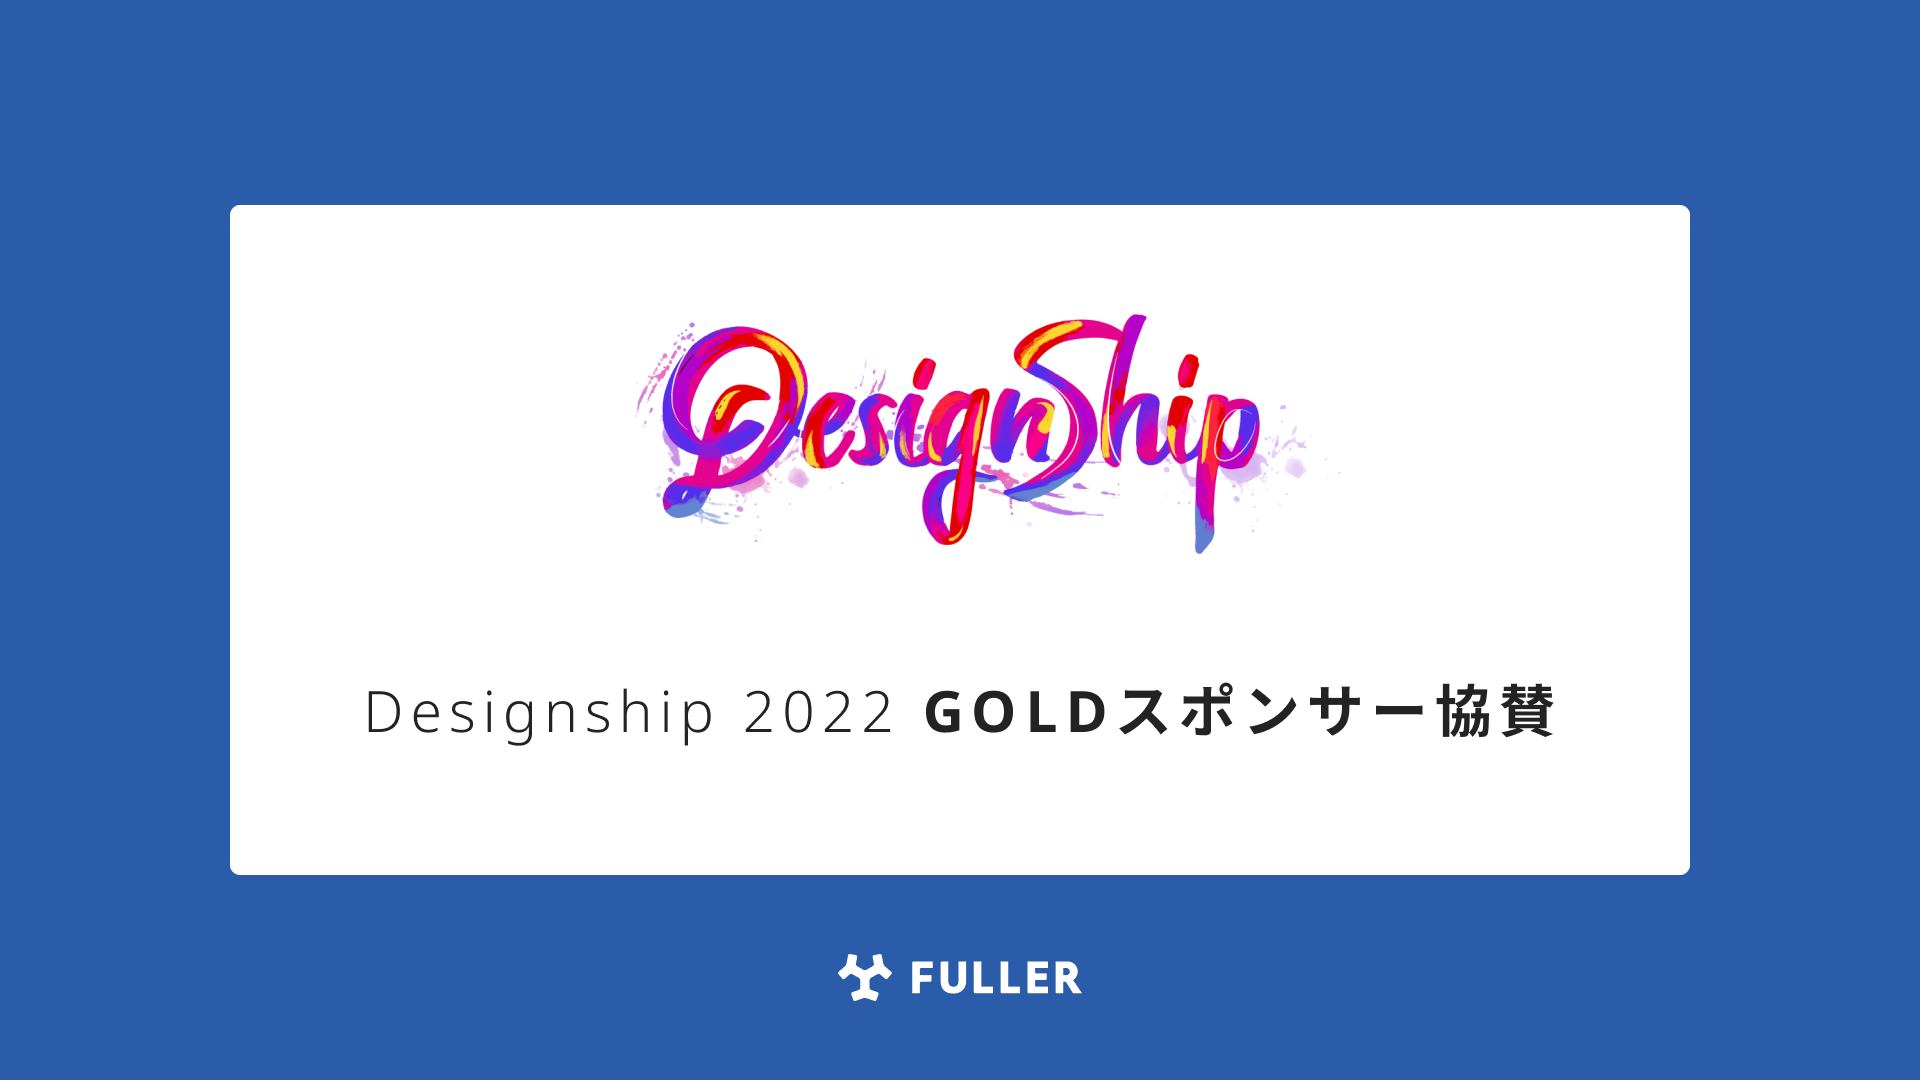 フラー、Designship 2022 にGOLDスポンサー協賛